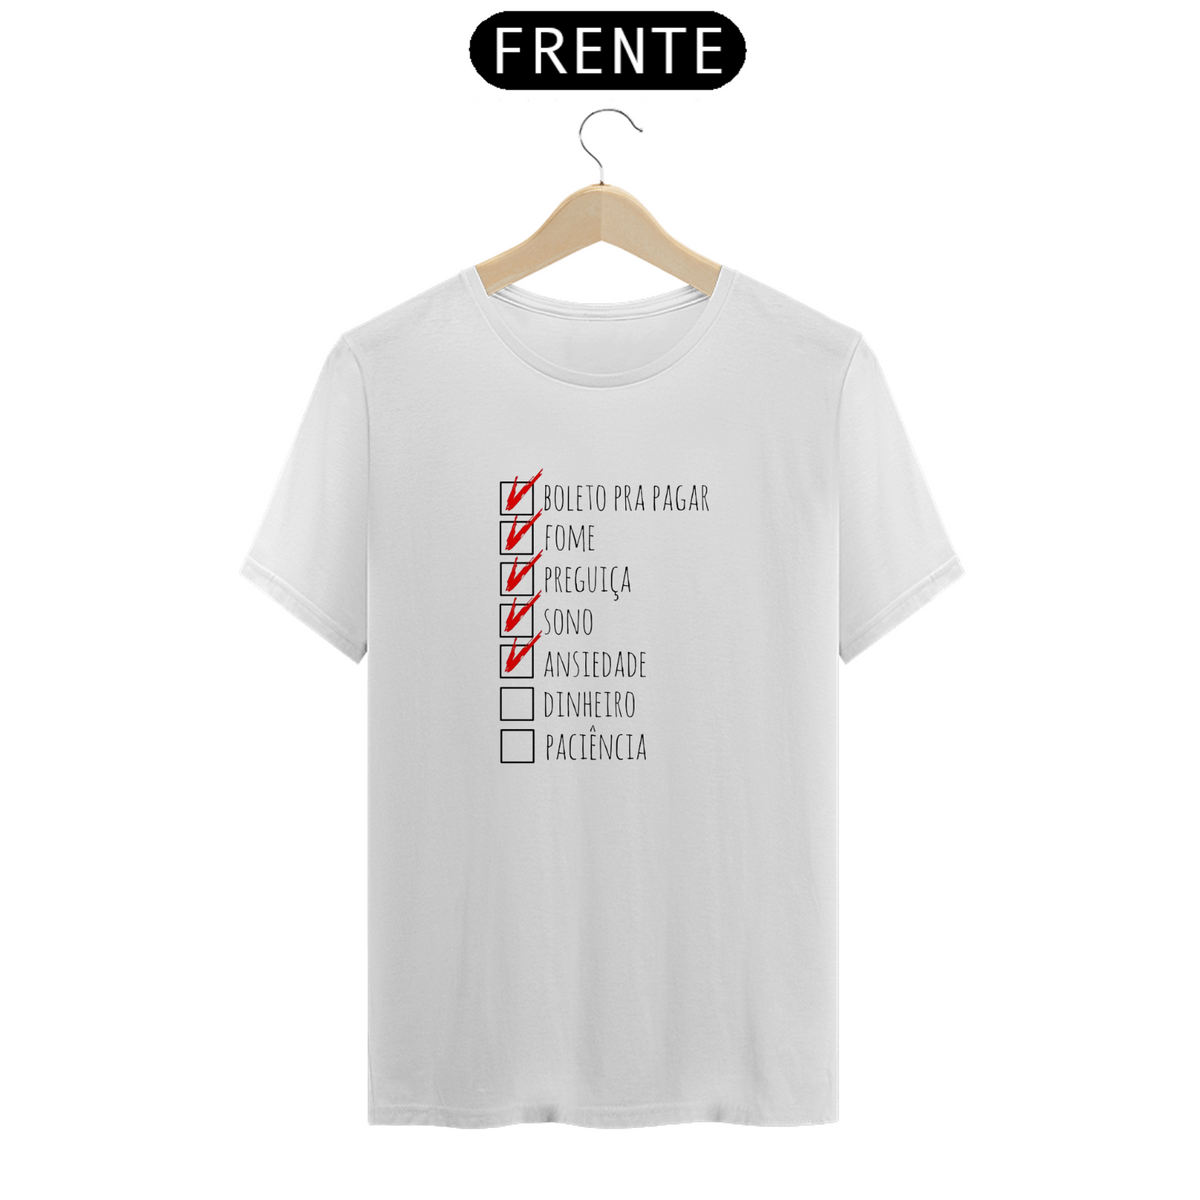 Nome do produto: Camiseta Boleto,fome,preguiça,sono,ansiedade,dinheiro,paciência